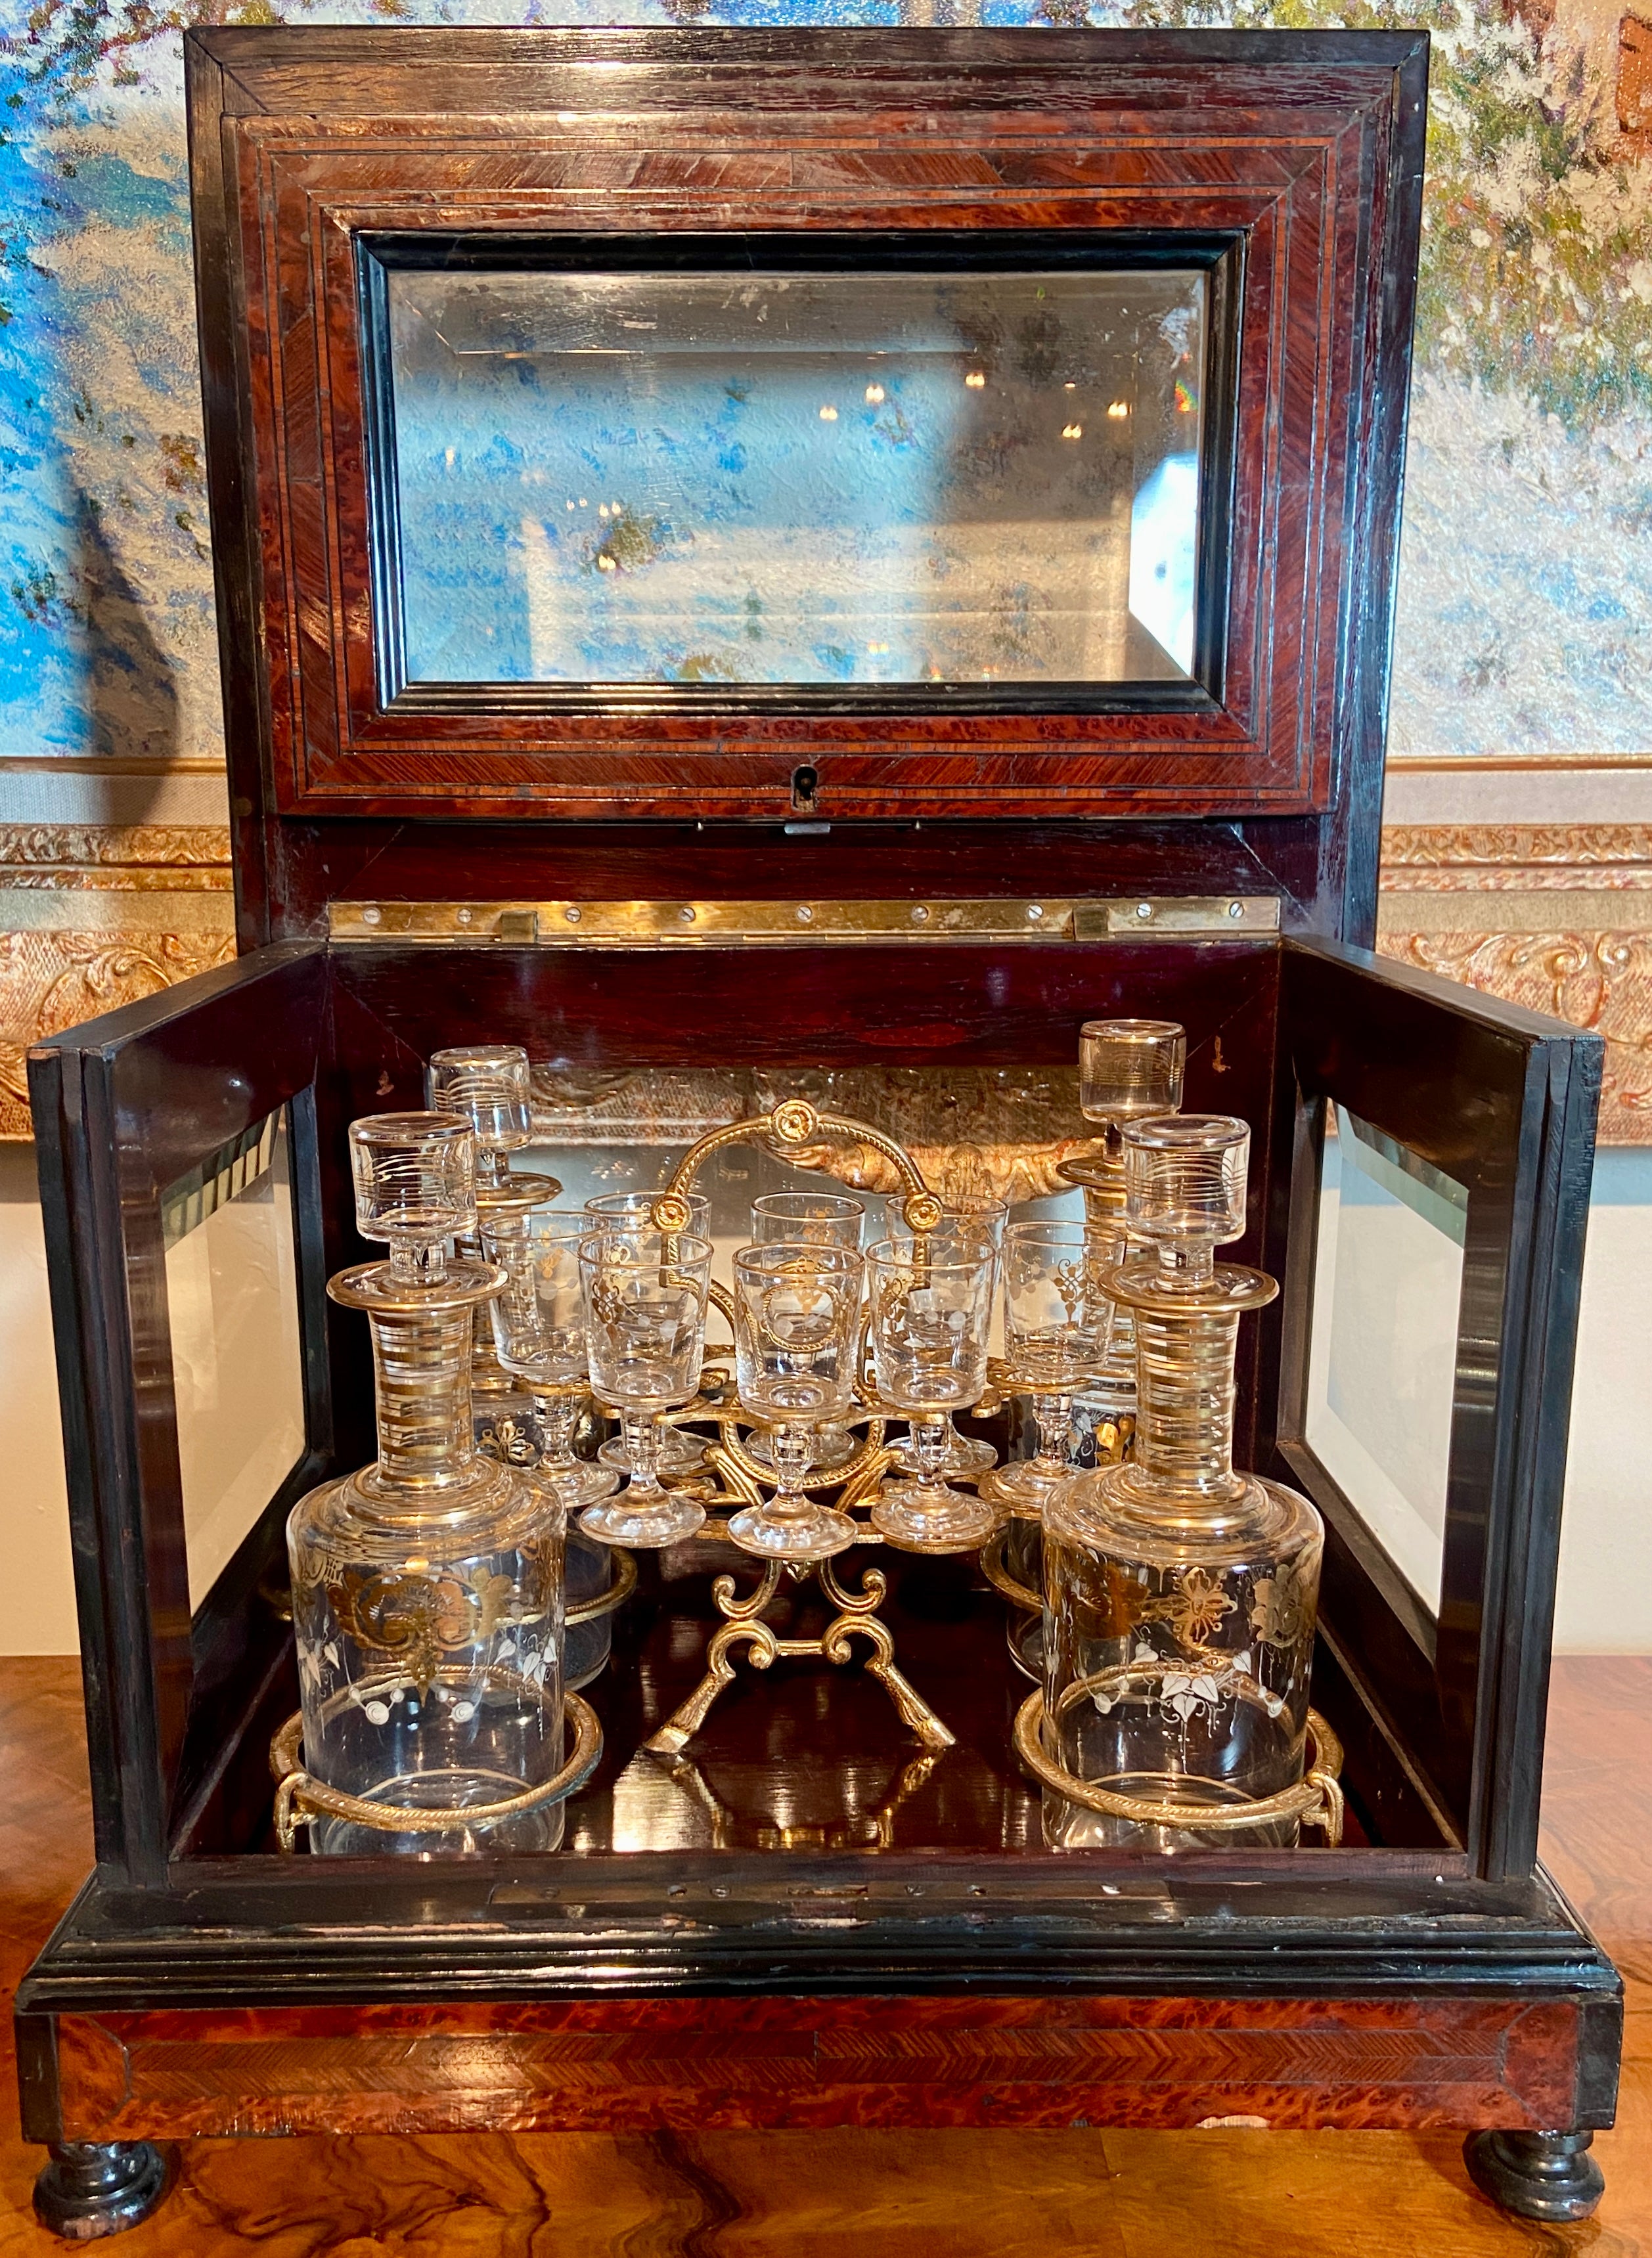 Ancienne liqueur française en bois de violette et cristal taillé, vers 1890.
Intérieur ajusté avec des articles en cristal gravé à l'or.